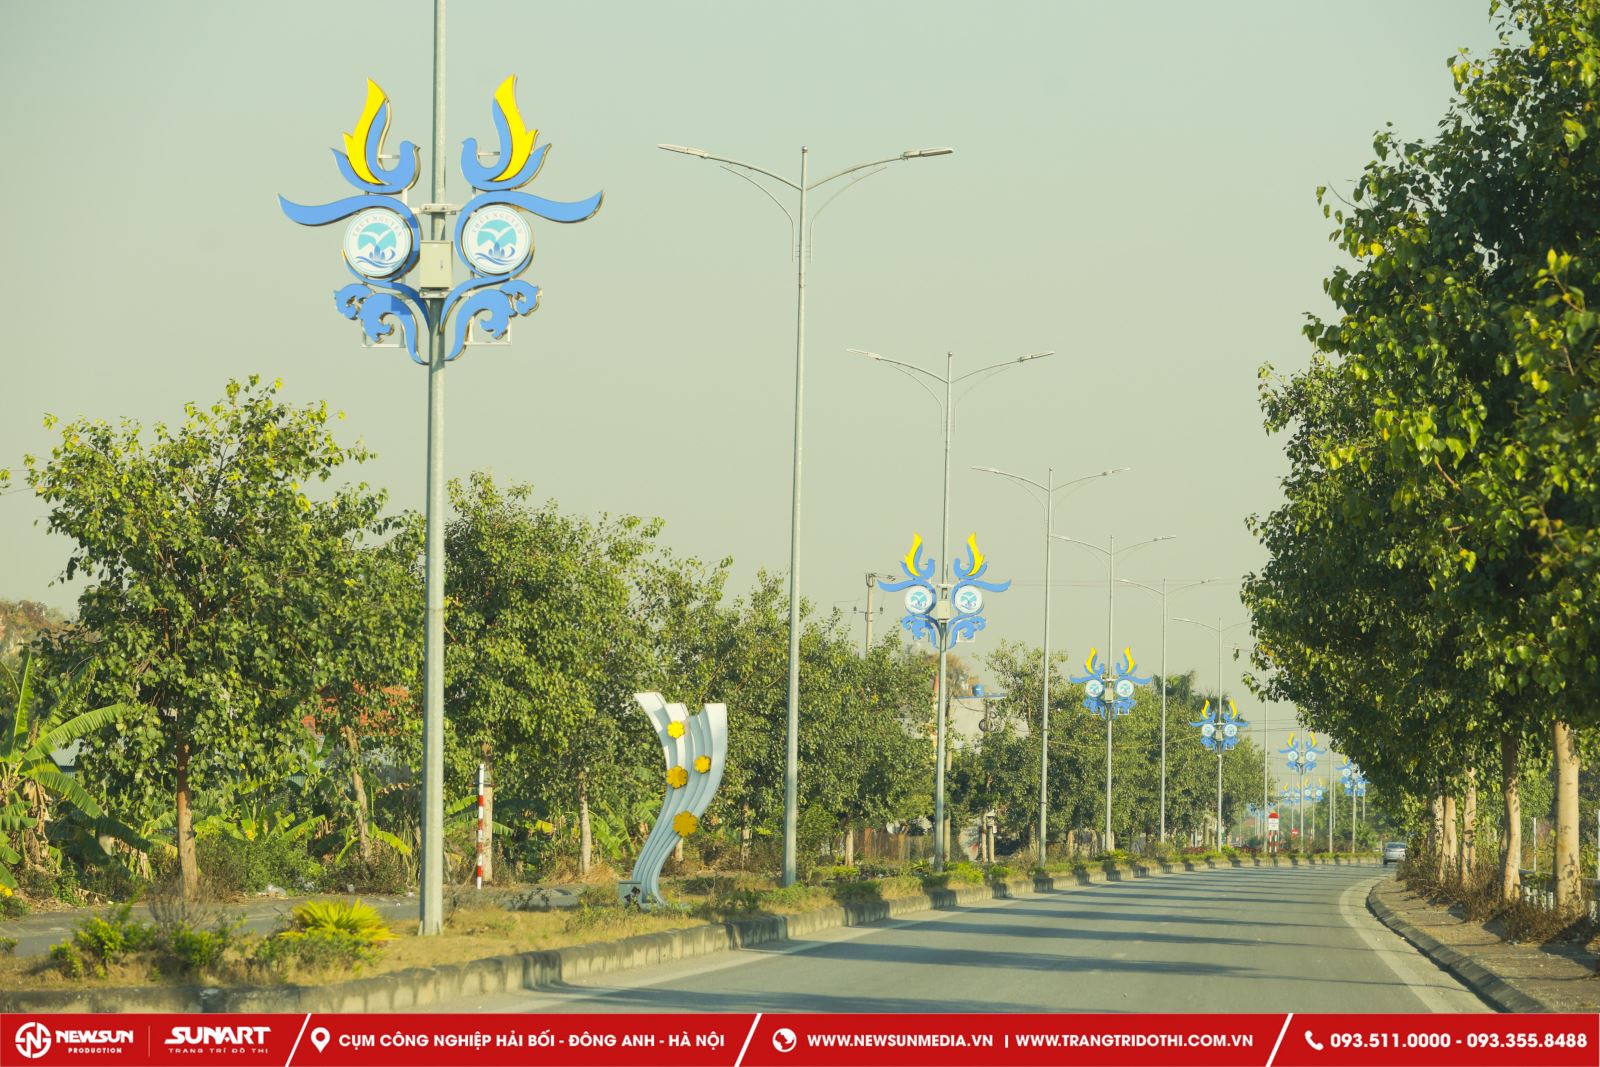 Công ty Trang trí đô thị Sunart cung cấp dịch vụ trang trí đèn đường tại cột điện trọn gói tại Việt Nam